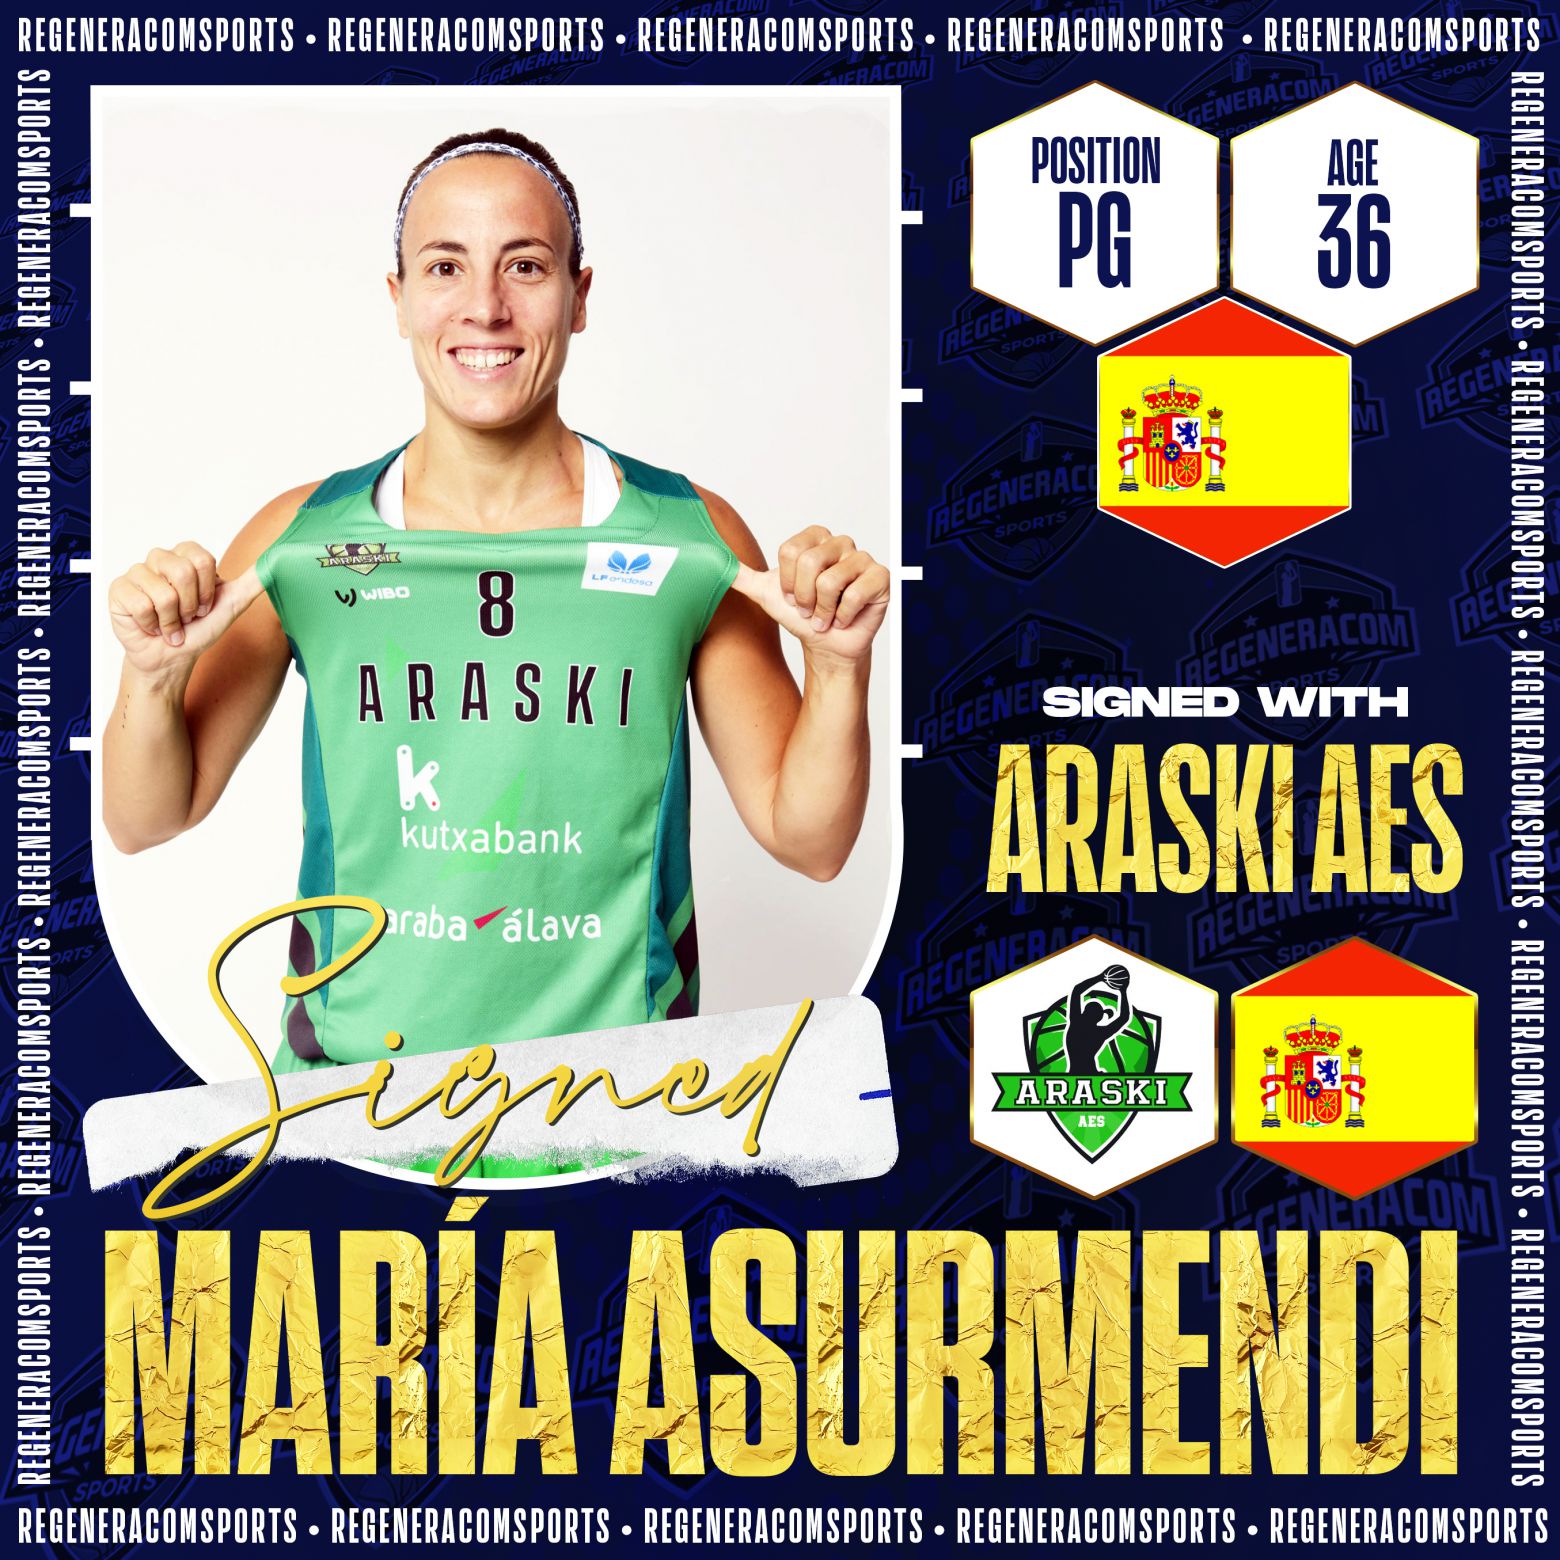 MARÍA ASURMENDI ha renovado con Araski para la temporada 2022/23